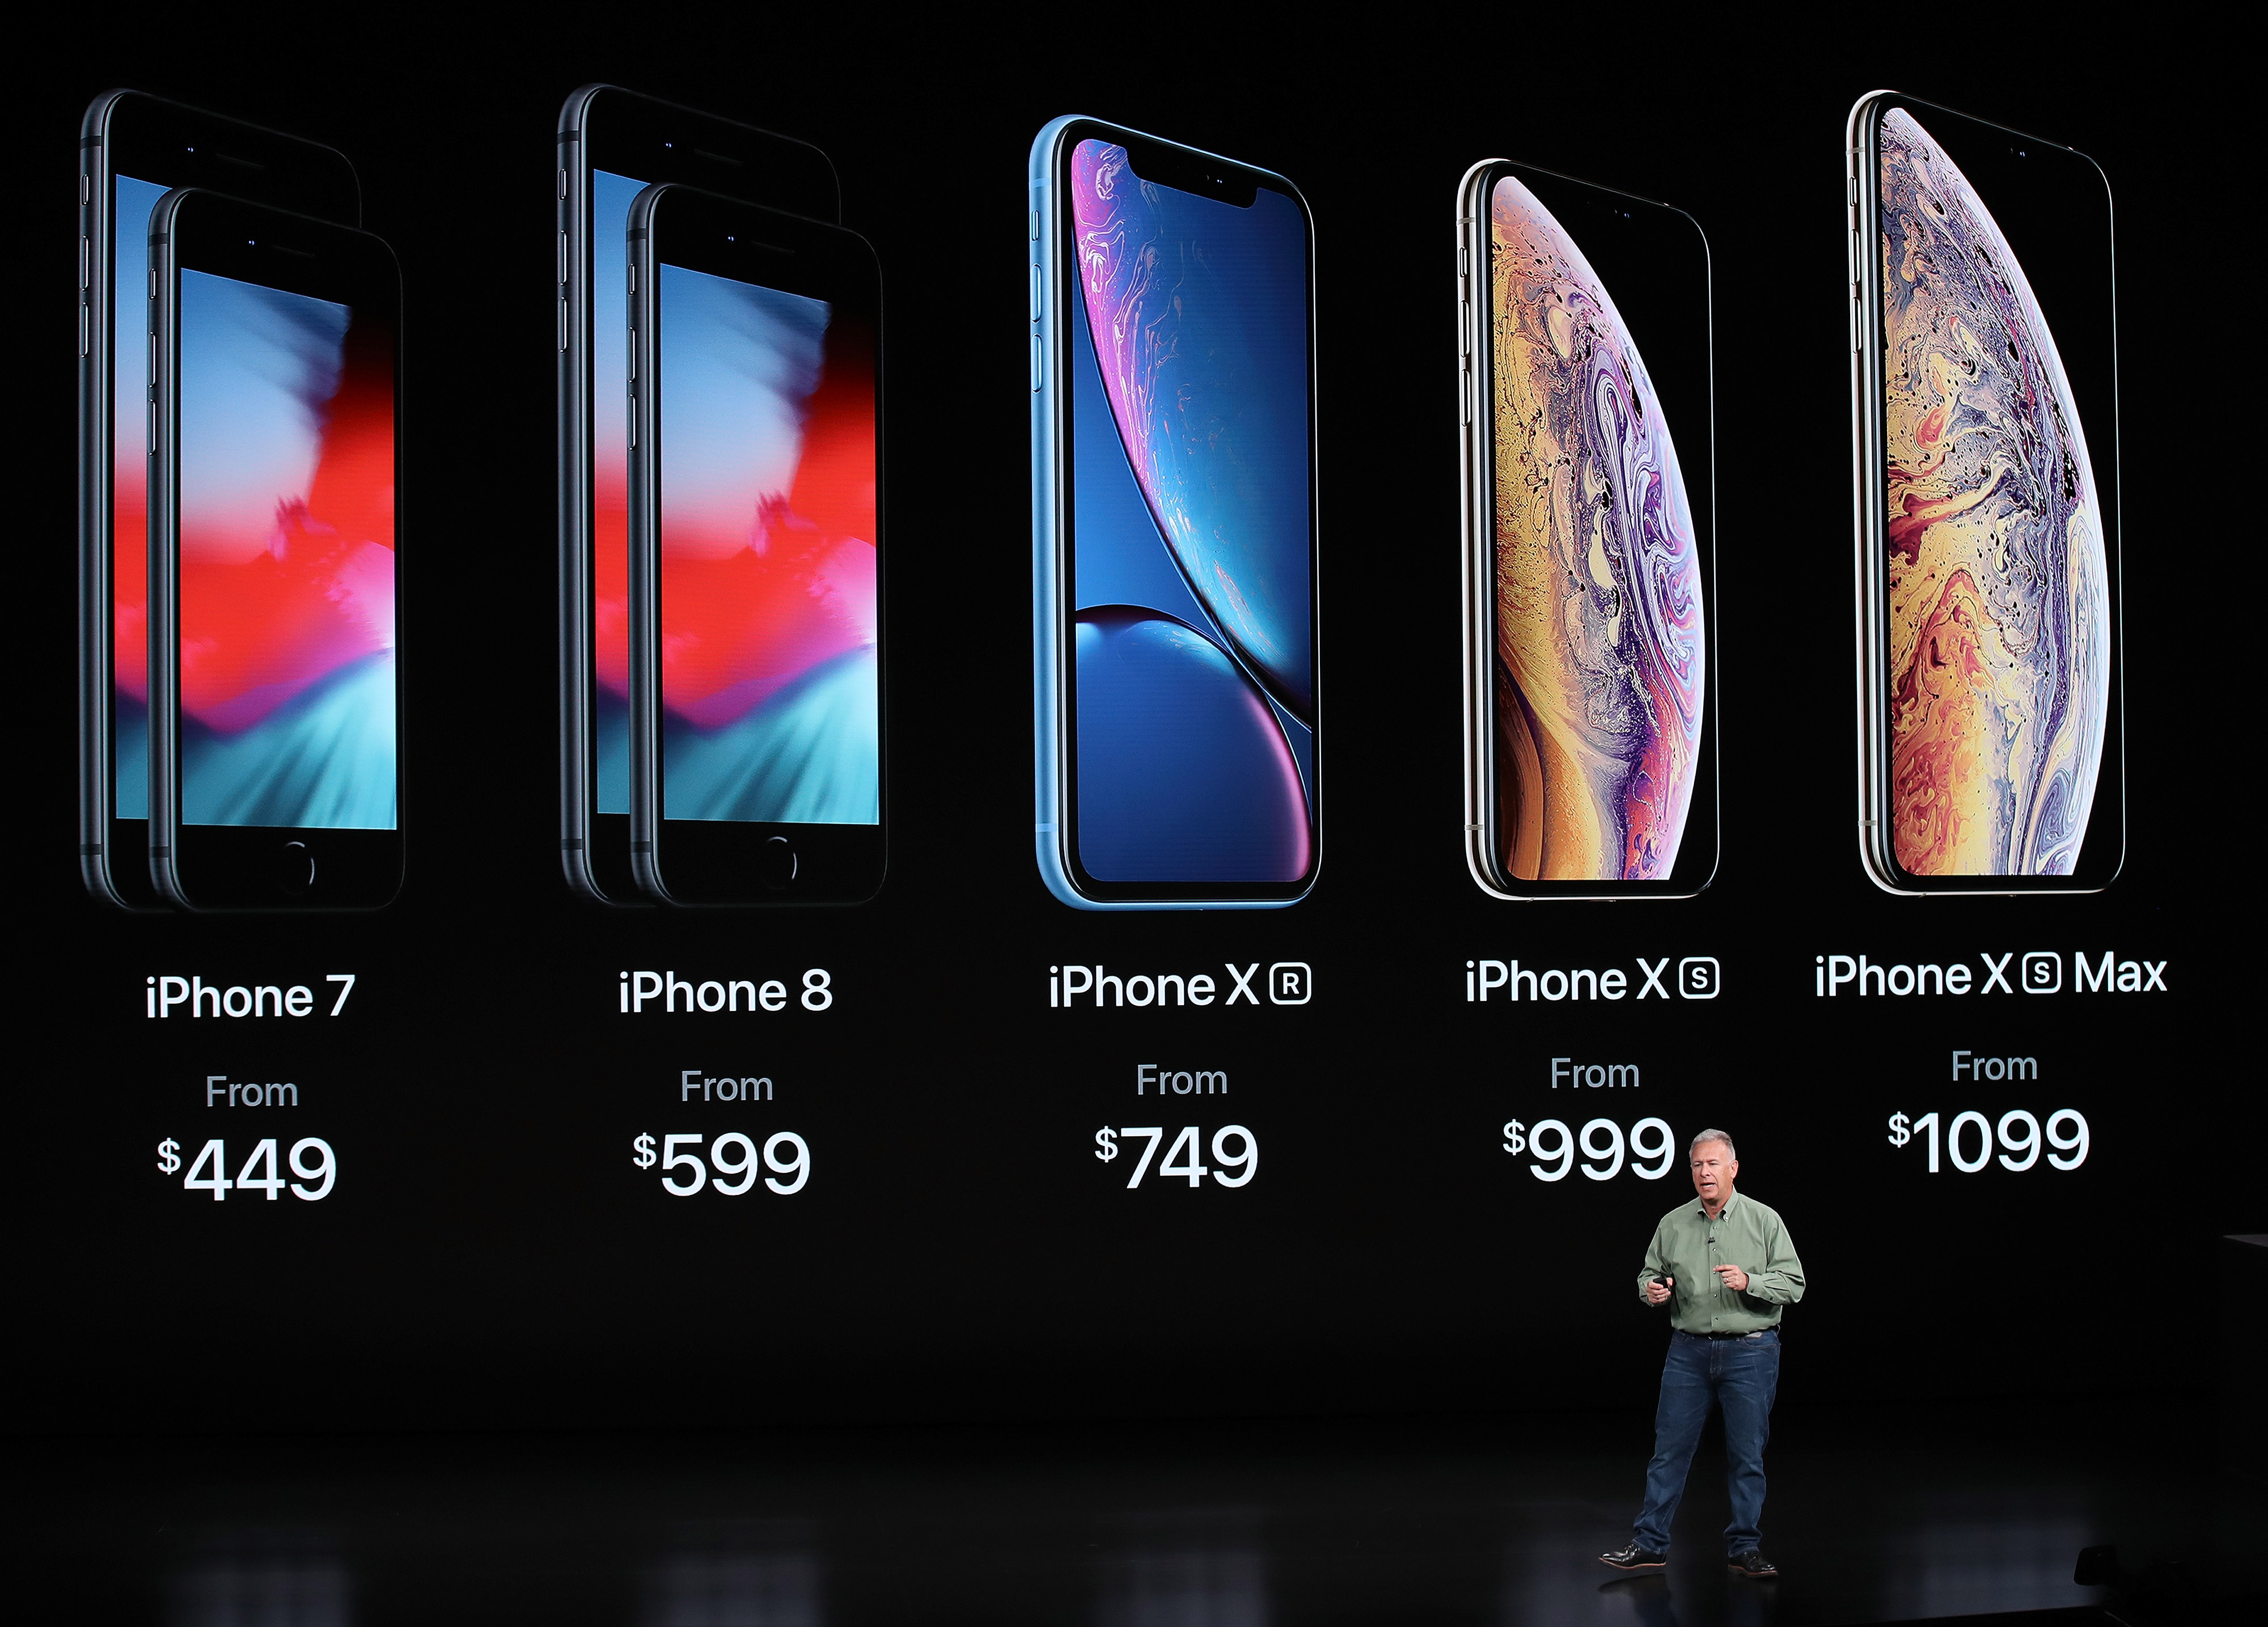 蘋果兩款新手機系列命名為iPhone XS，首次具備512G存儲空間選項，以及雙卡雙待功能，另一款iPhone XR則搭載無邊框屏幕。（法新社圖片）